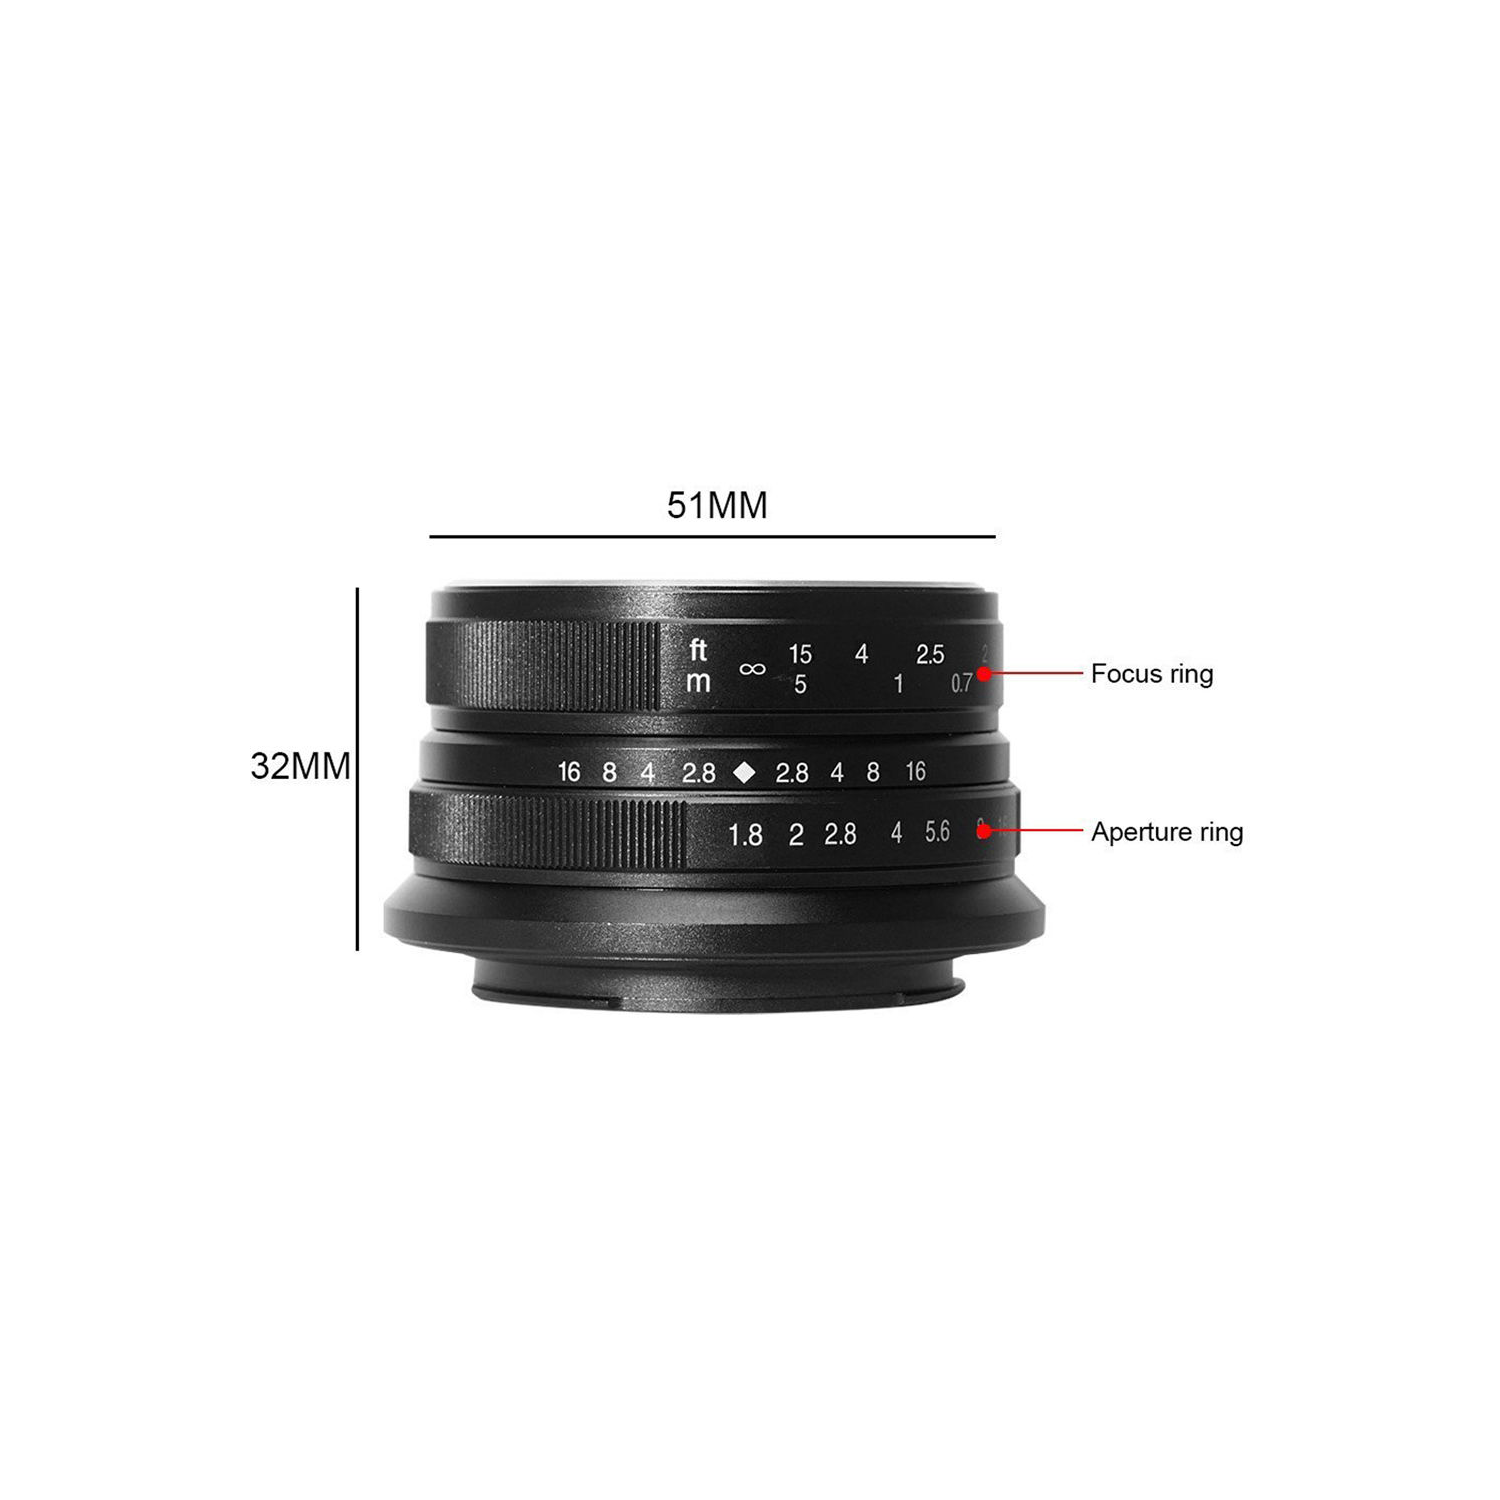 7artisans photoélectrique 25 mm f / 1,8 objectif pour le support Canon EF-M